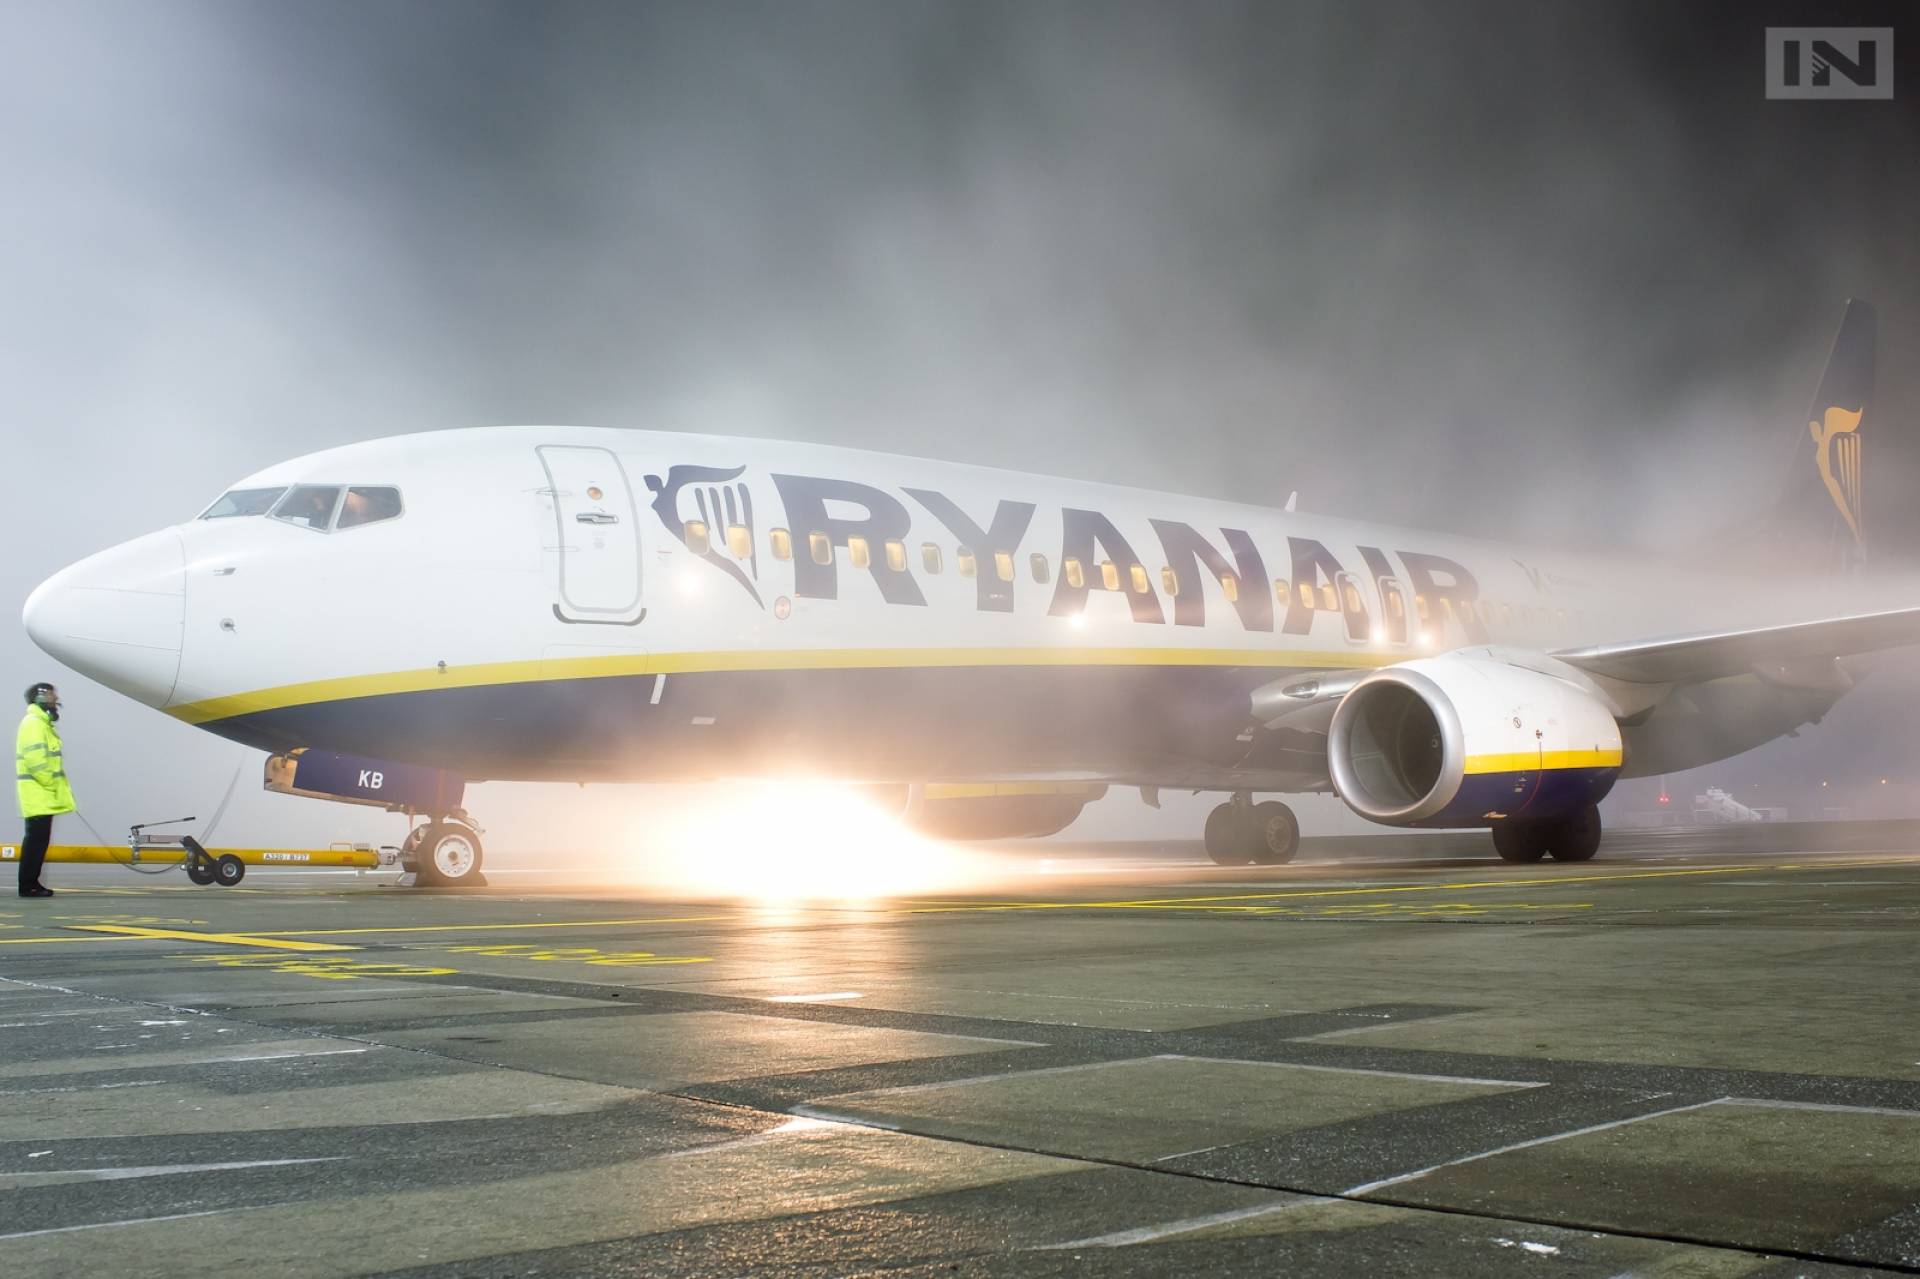 Ceny biletów za loty Ryanaira z Krakowa nawet 10 razy droższe